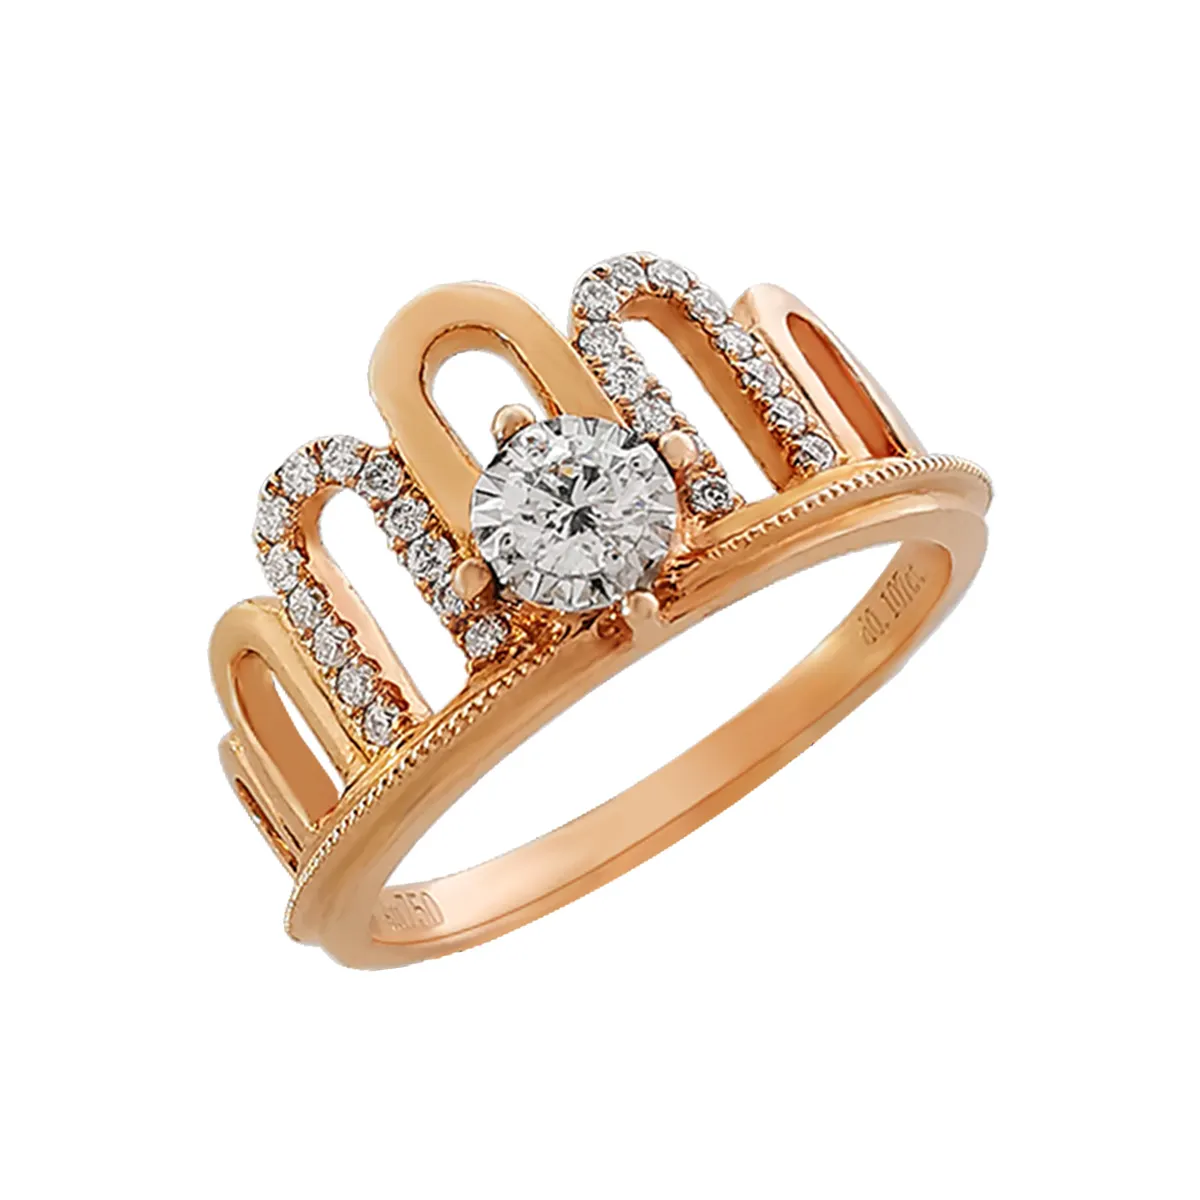 패션 쥬얼리 18K 정품 골드 반지 VVS Moissanite 결혼 반지 여성 보석 크라운 반지 도매 로즈 골드